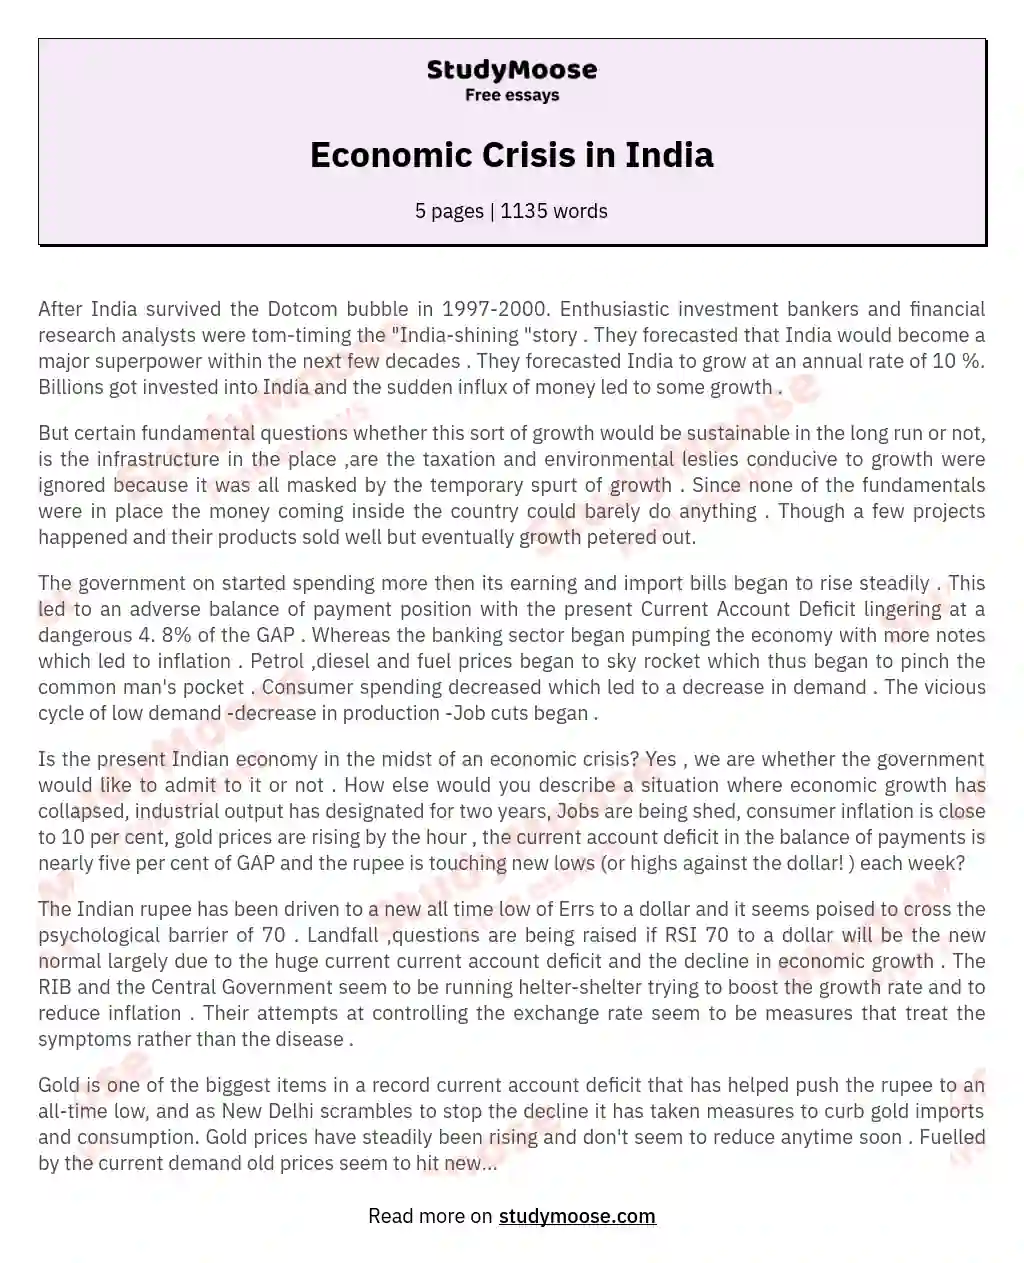 economic crisis in india essay